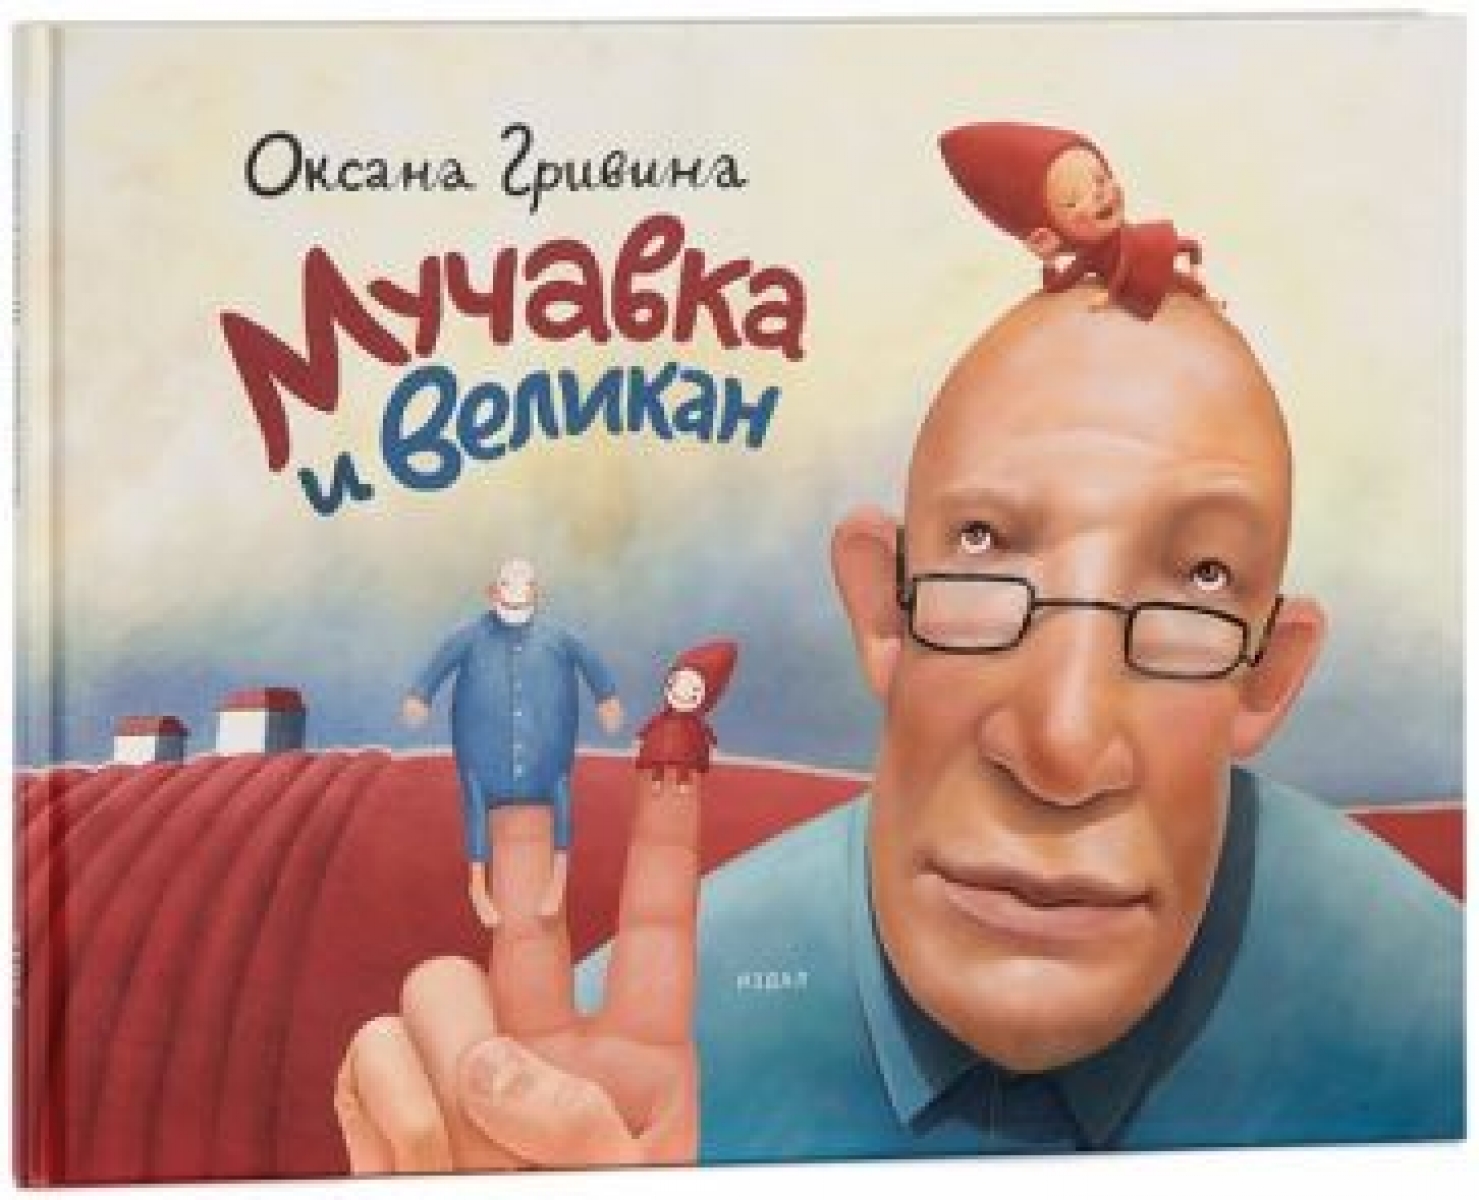 Гривина О. Мучавка и великан. 3-е изд 